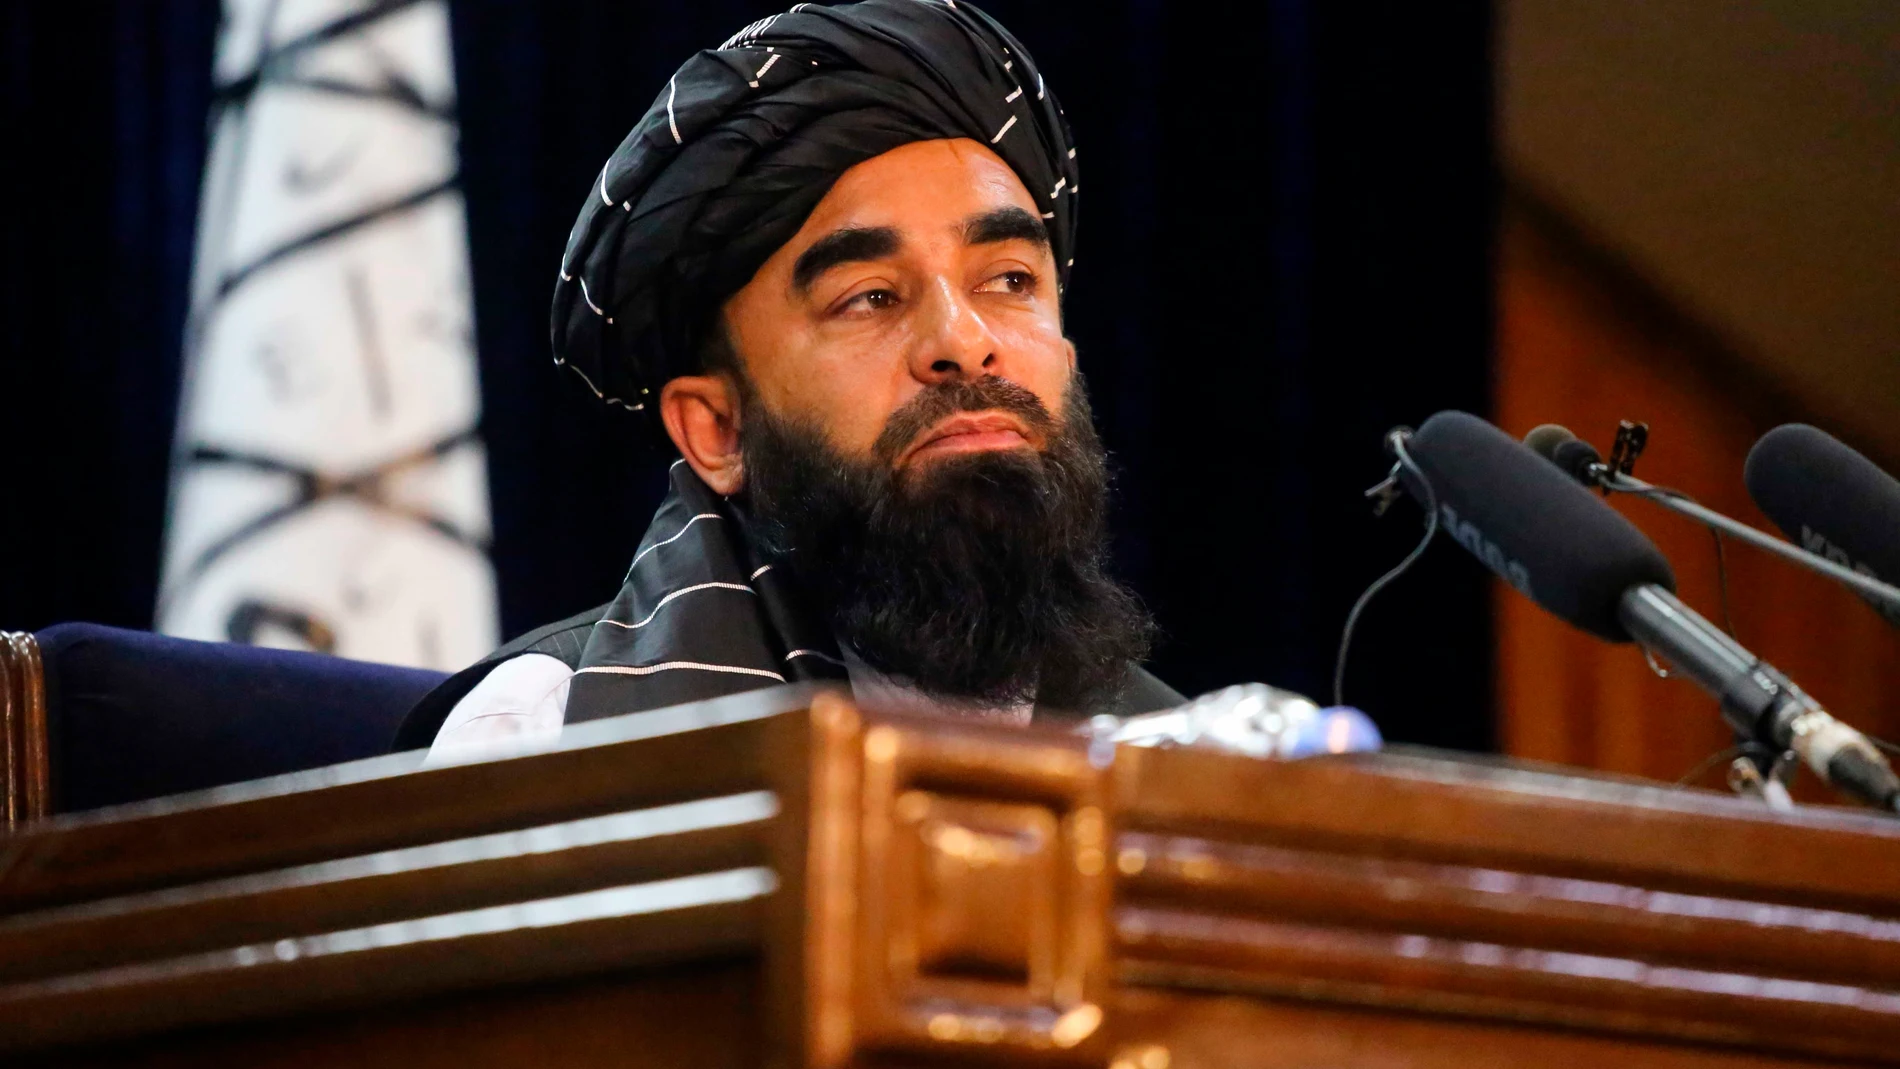 El gobierno de los talibanes estará compuesto por solo hombres